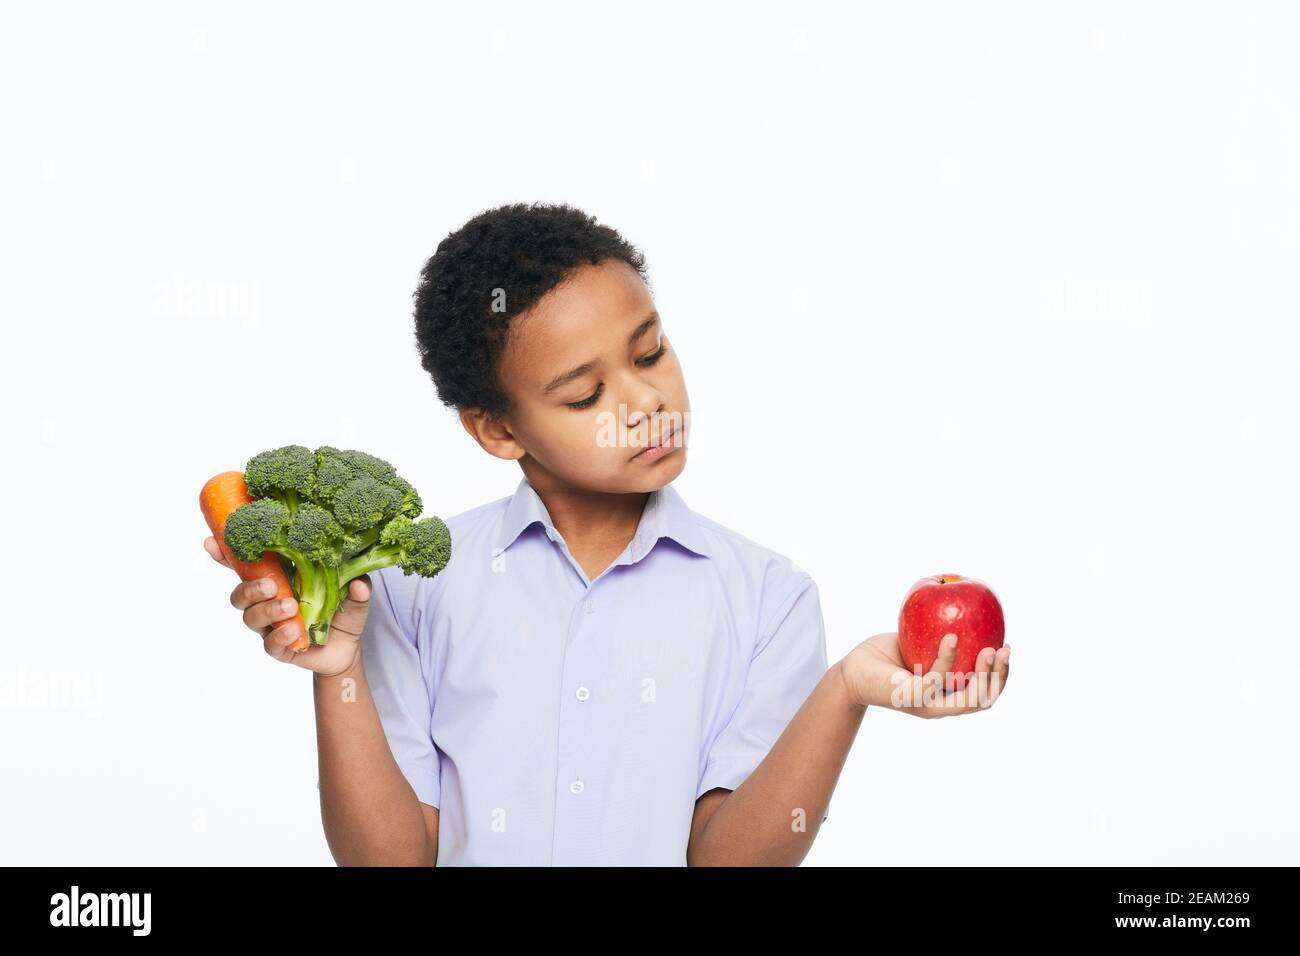 Der afroamerikanische Junge hält Karotten, Brokkoli und Apfel in der Hand. Gesund essen für Kinder Stockfoto